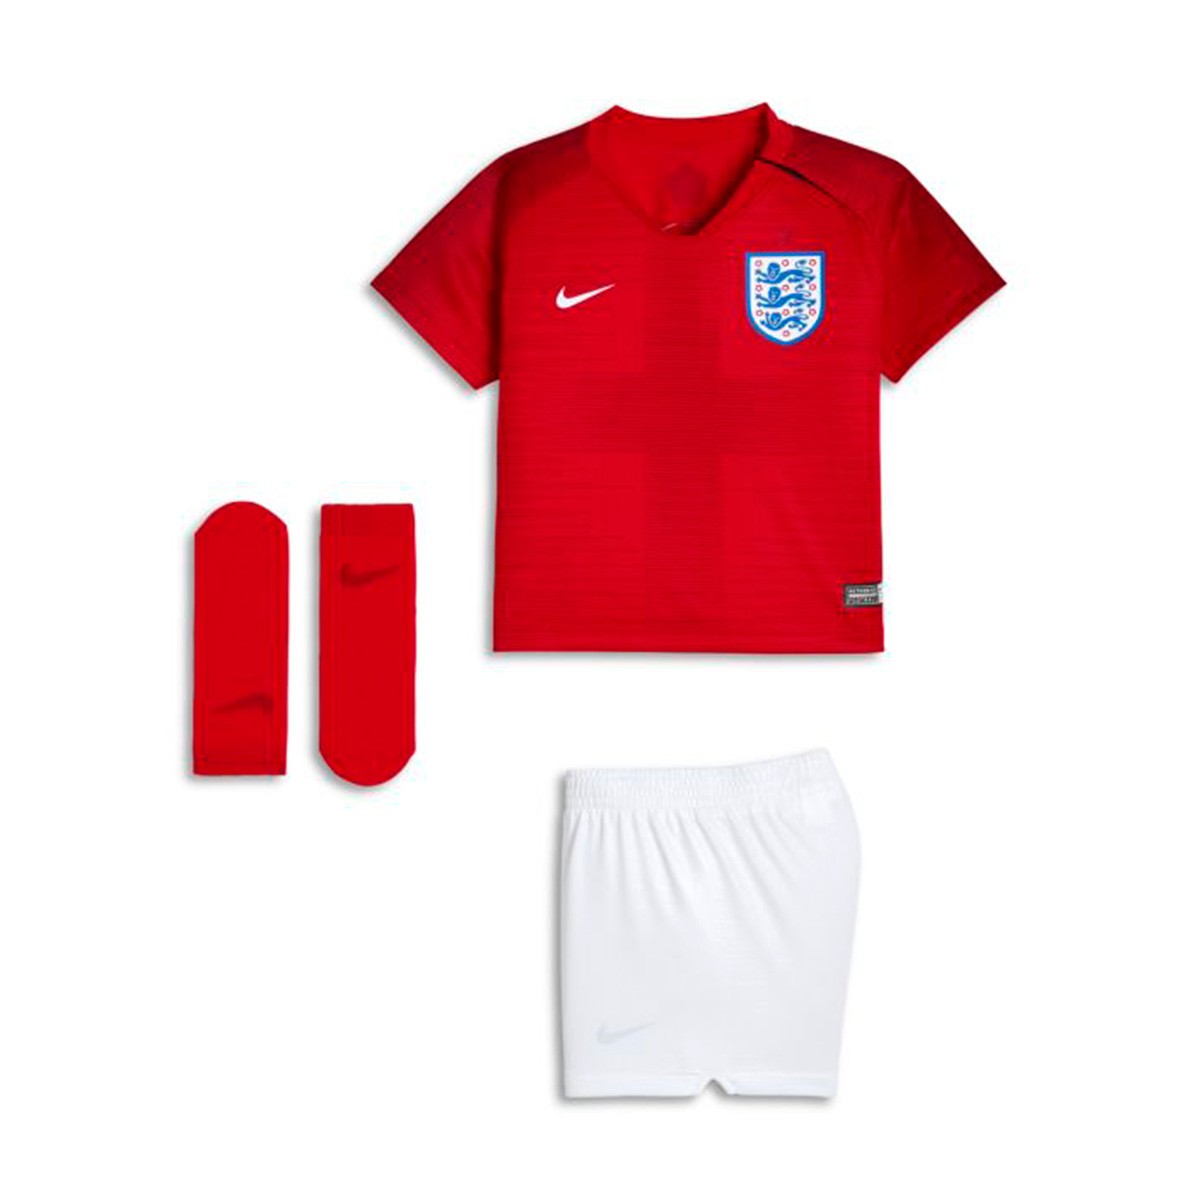 England Football Training Kit 2018 : Ù…Ø§Ø¦Ø© Ø§Ù„Ù†Ø¬Ø§Ø± Ø£ØµÙ„ÙŠ ...